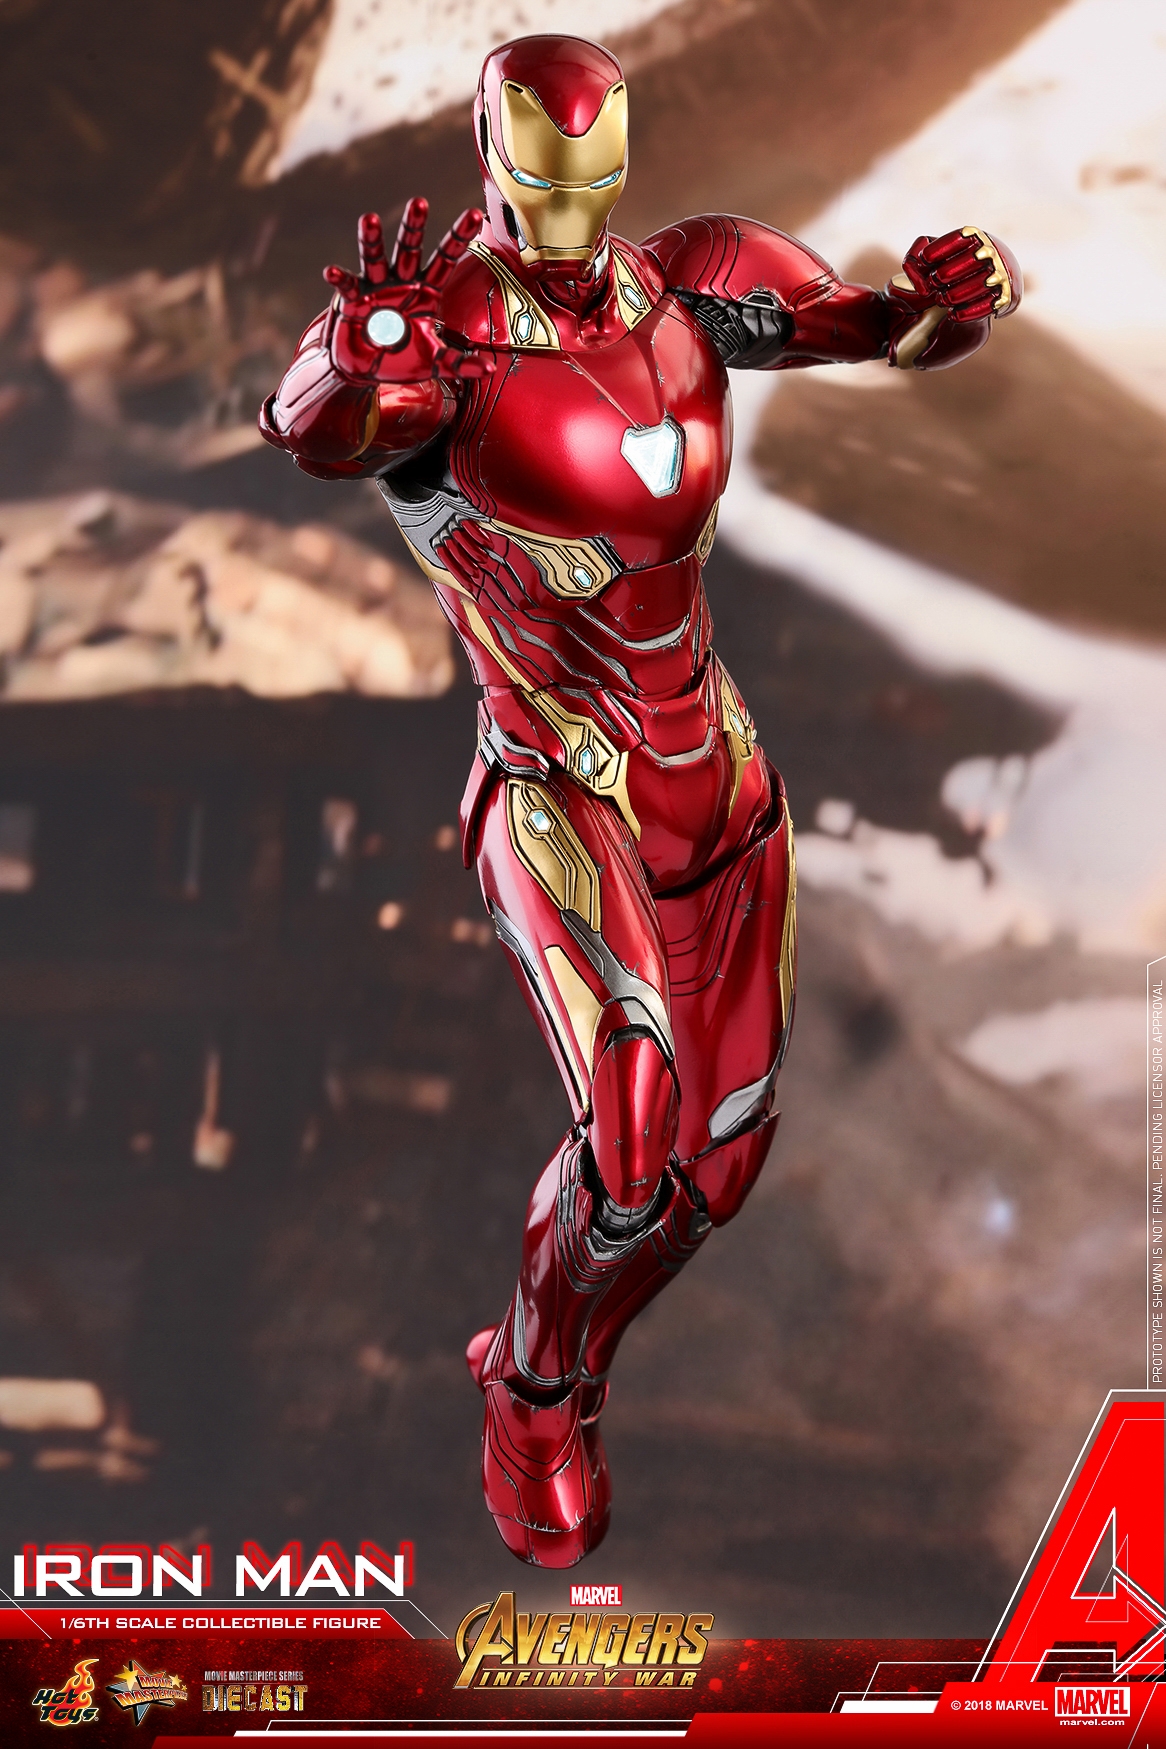 Hot-Toys-MMS473D23-Avengers-Infinity-War-Iron-Man-Collectible-Figure-012.jpg